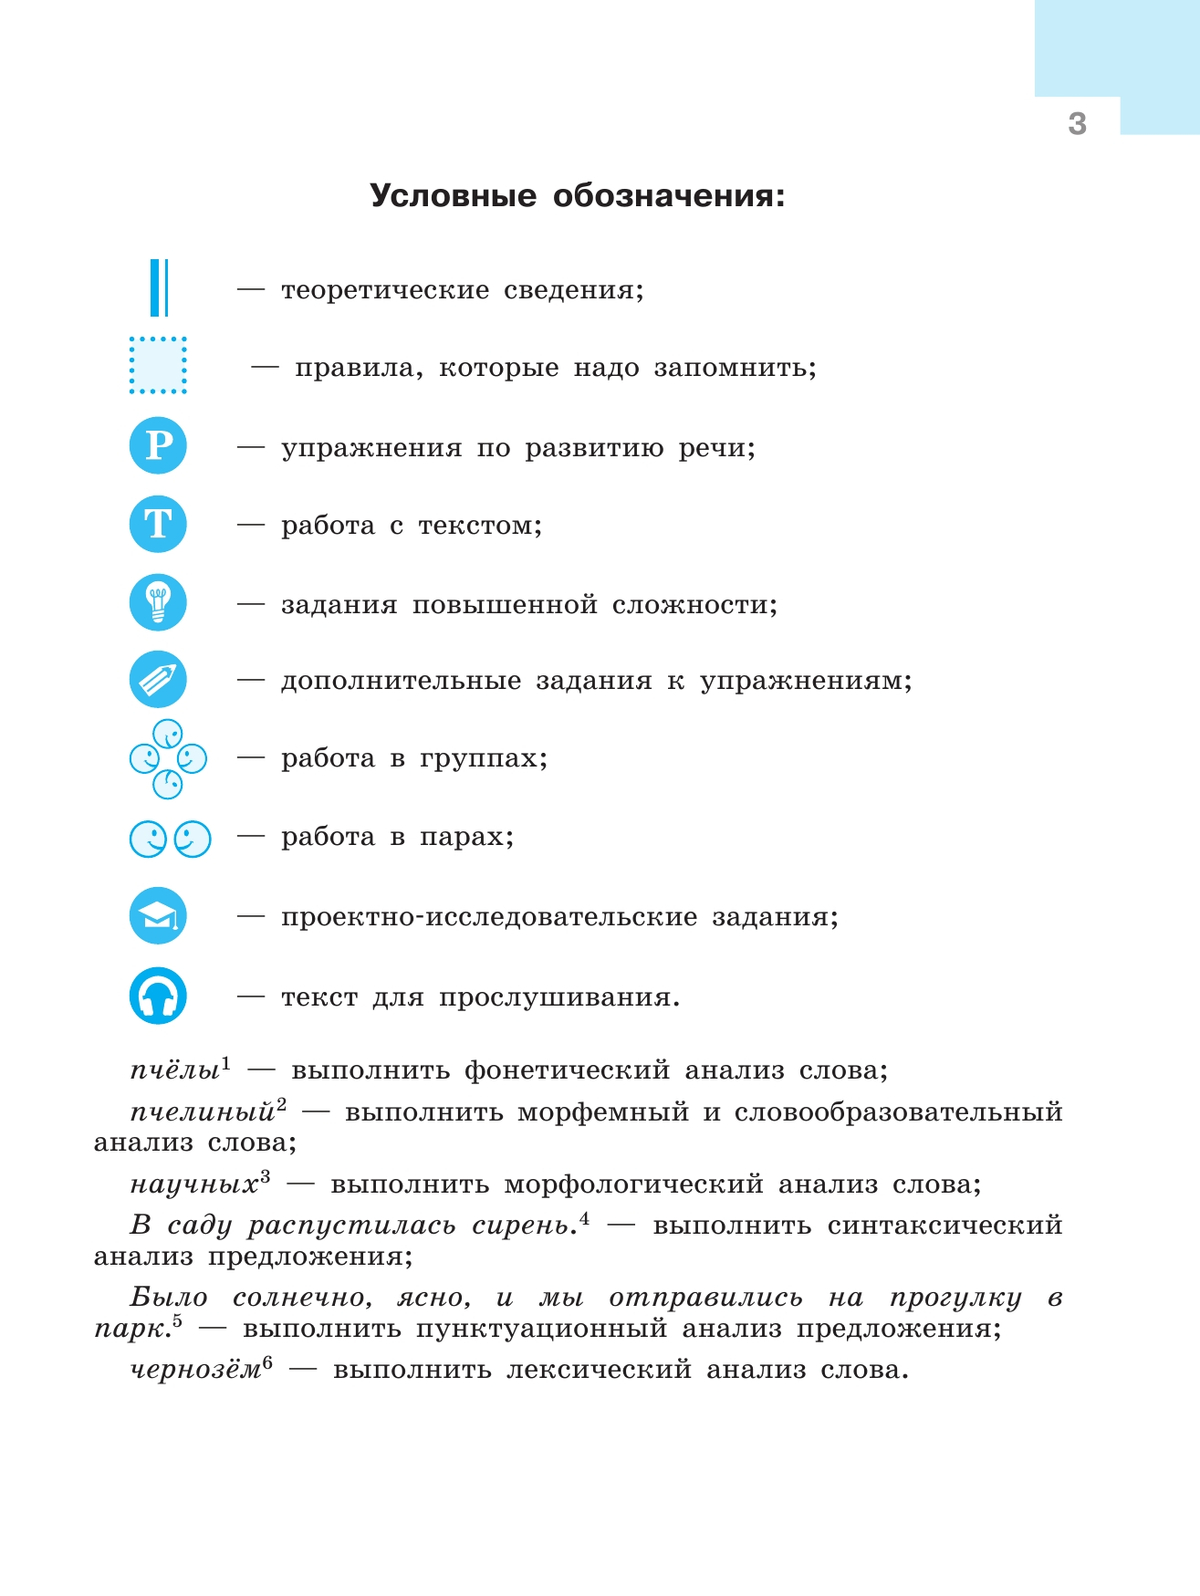 Русский язык. 8 класс. Учебник. 5